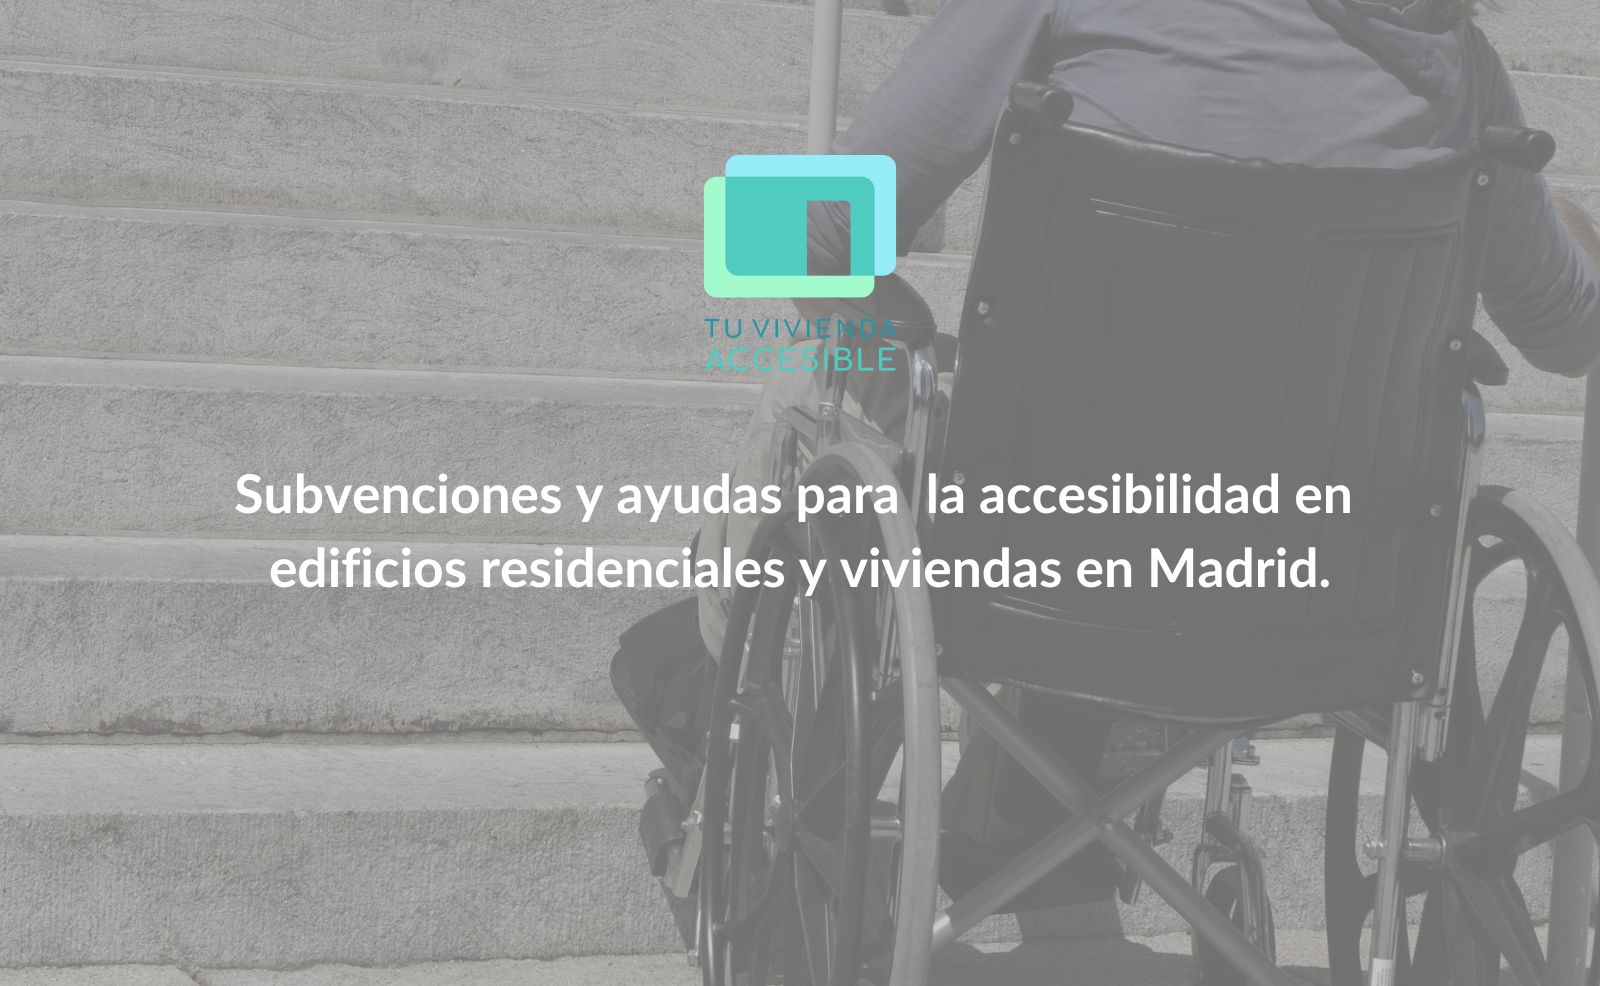 ¿Subvenciones y ayudas para accesibilidad de edificios en Madrid?